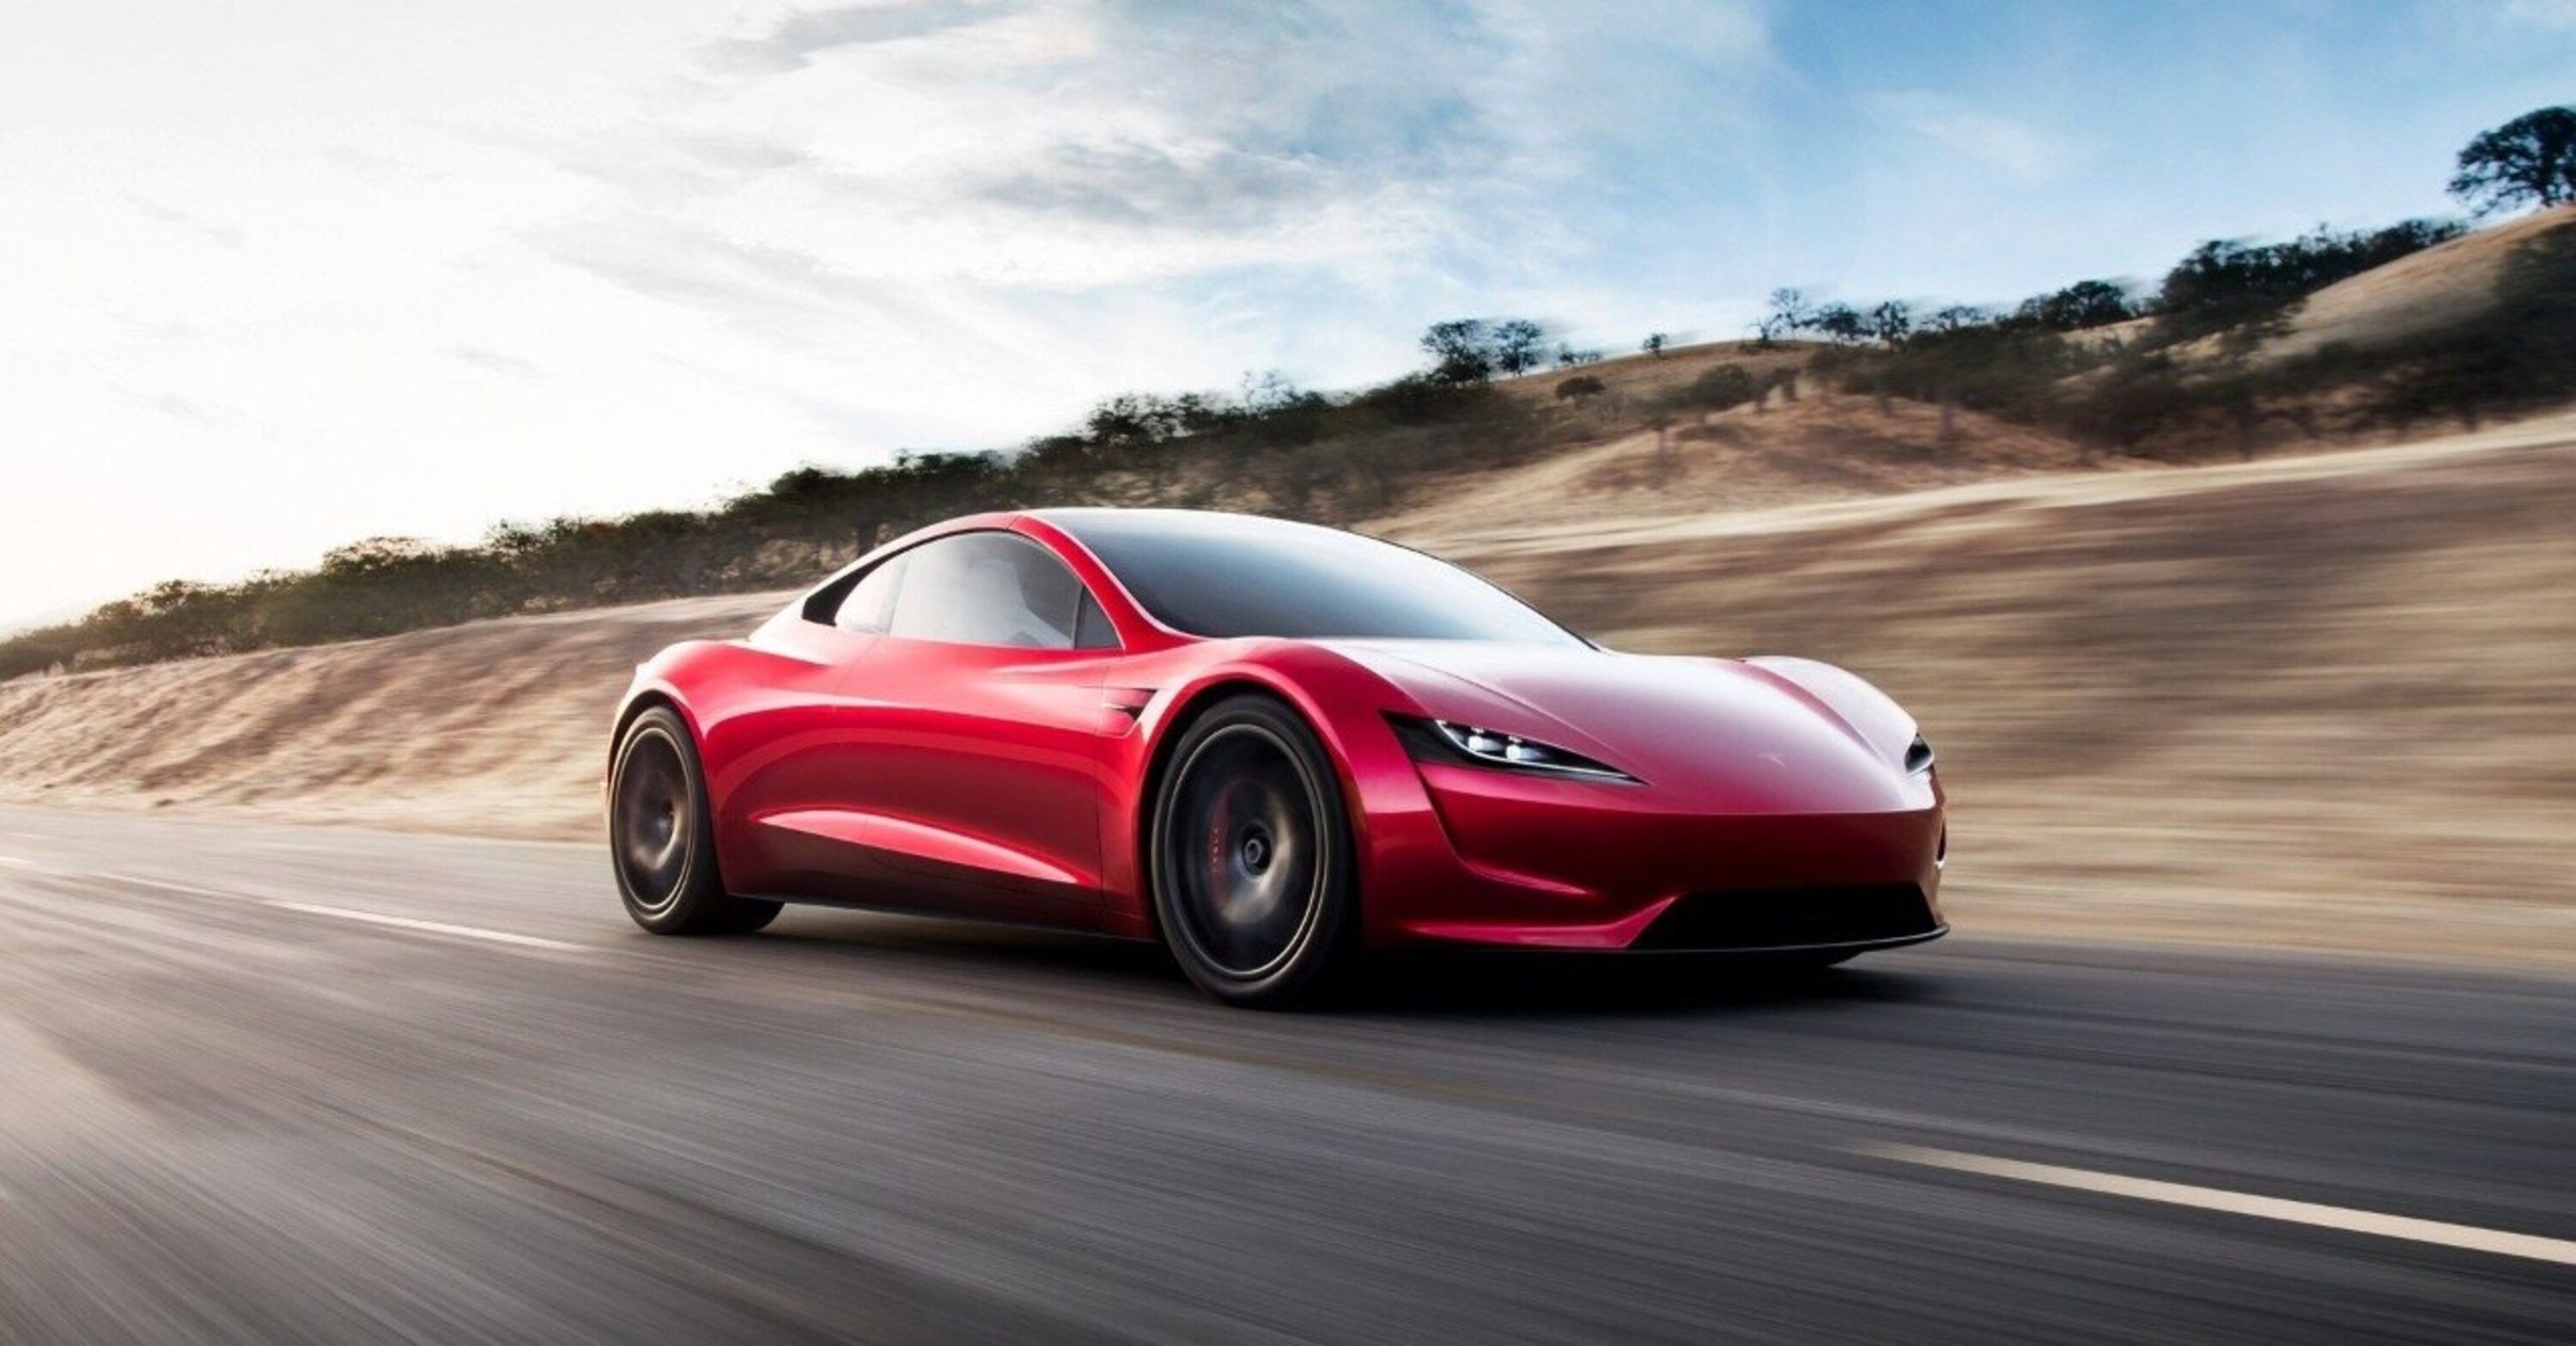 La Tesla Roadster promette numeri da capogiro. Ma quando arriva?